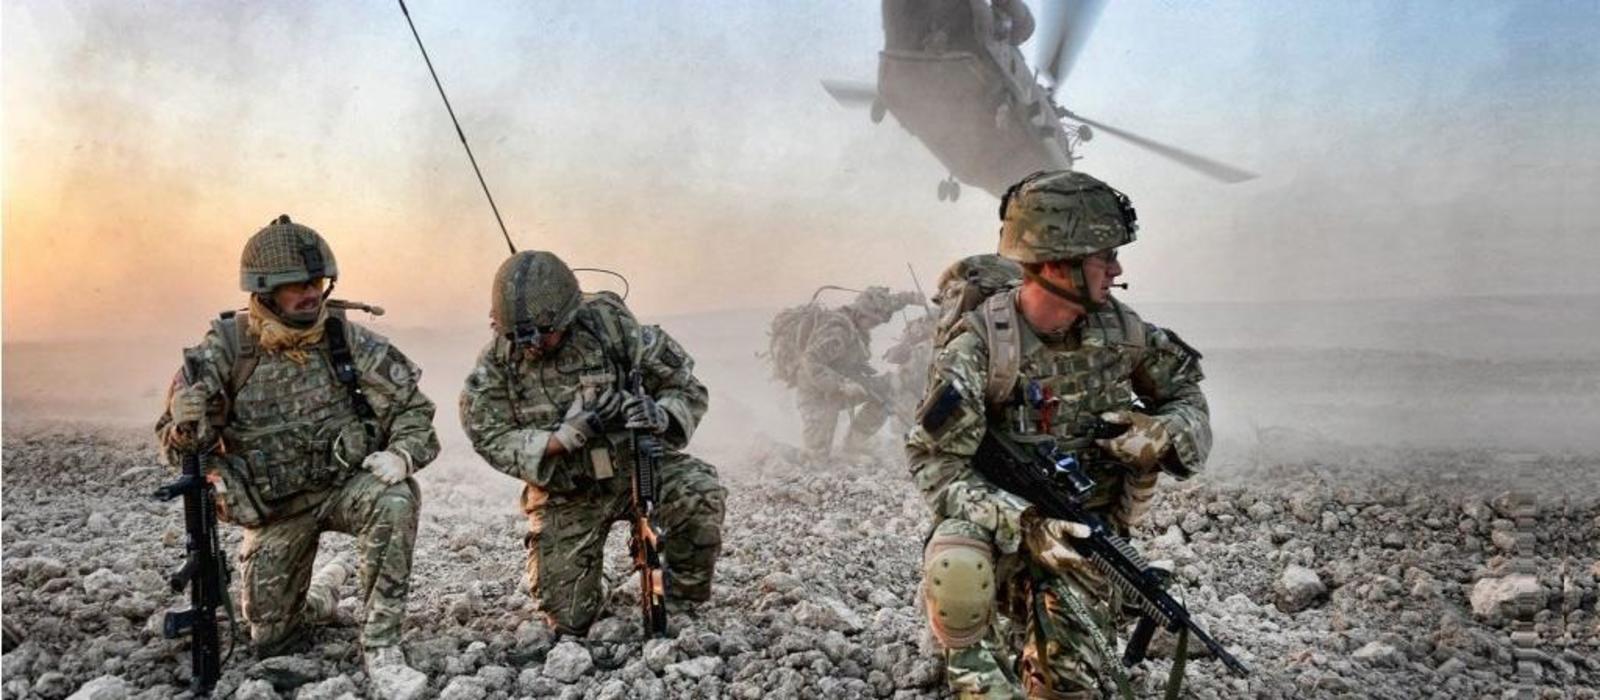 Σφαγή Bρετανών SAS σε ενέδρα του ISIS στην Συρία: Πέντε νεκροί, 4 τραυματίες